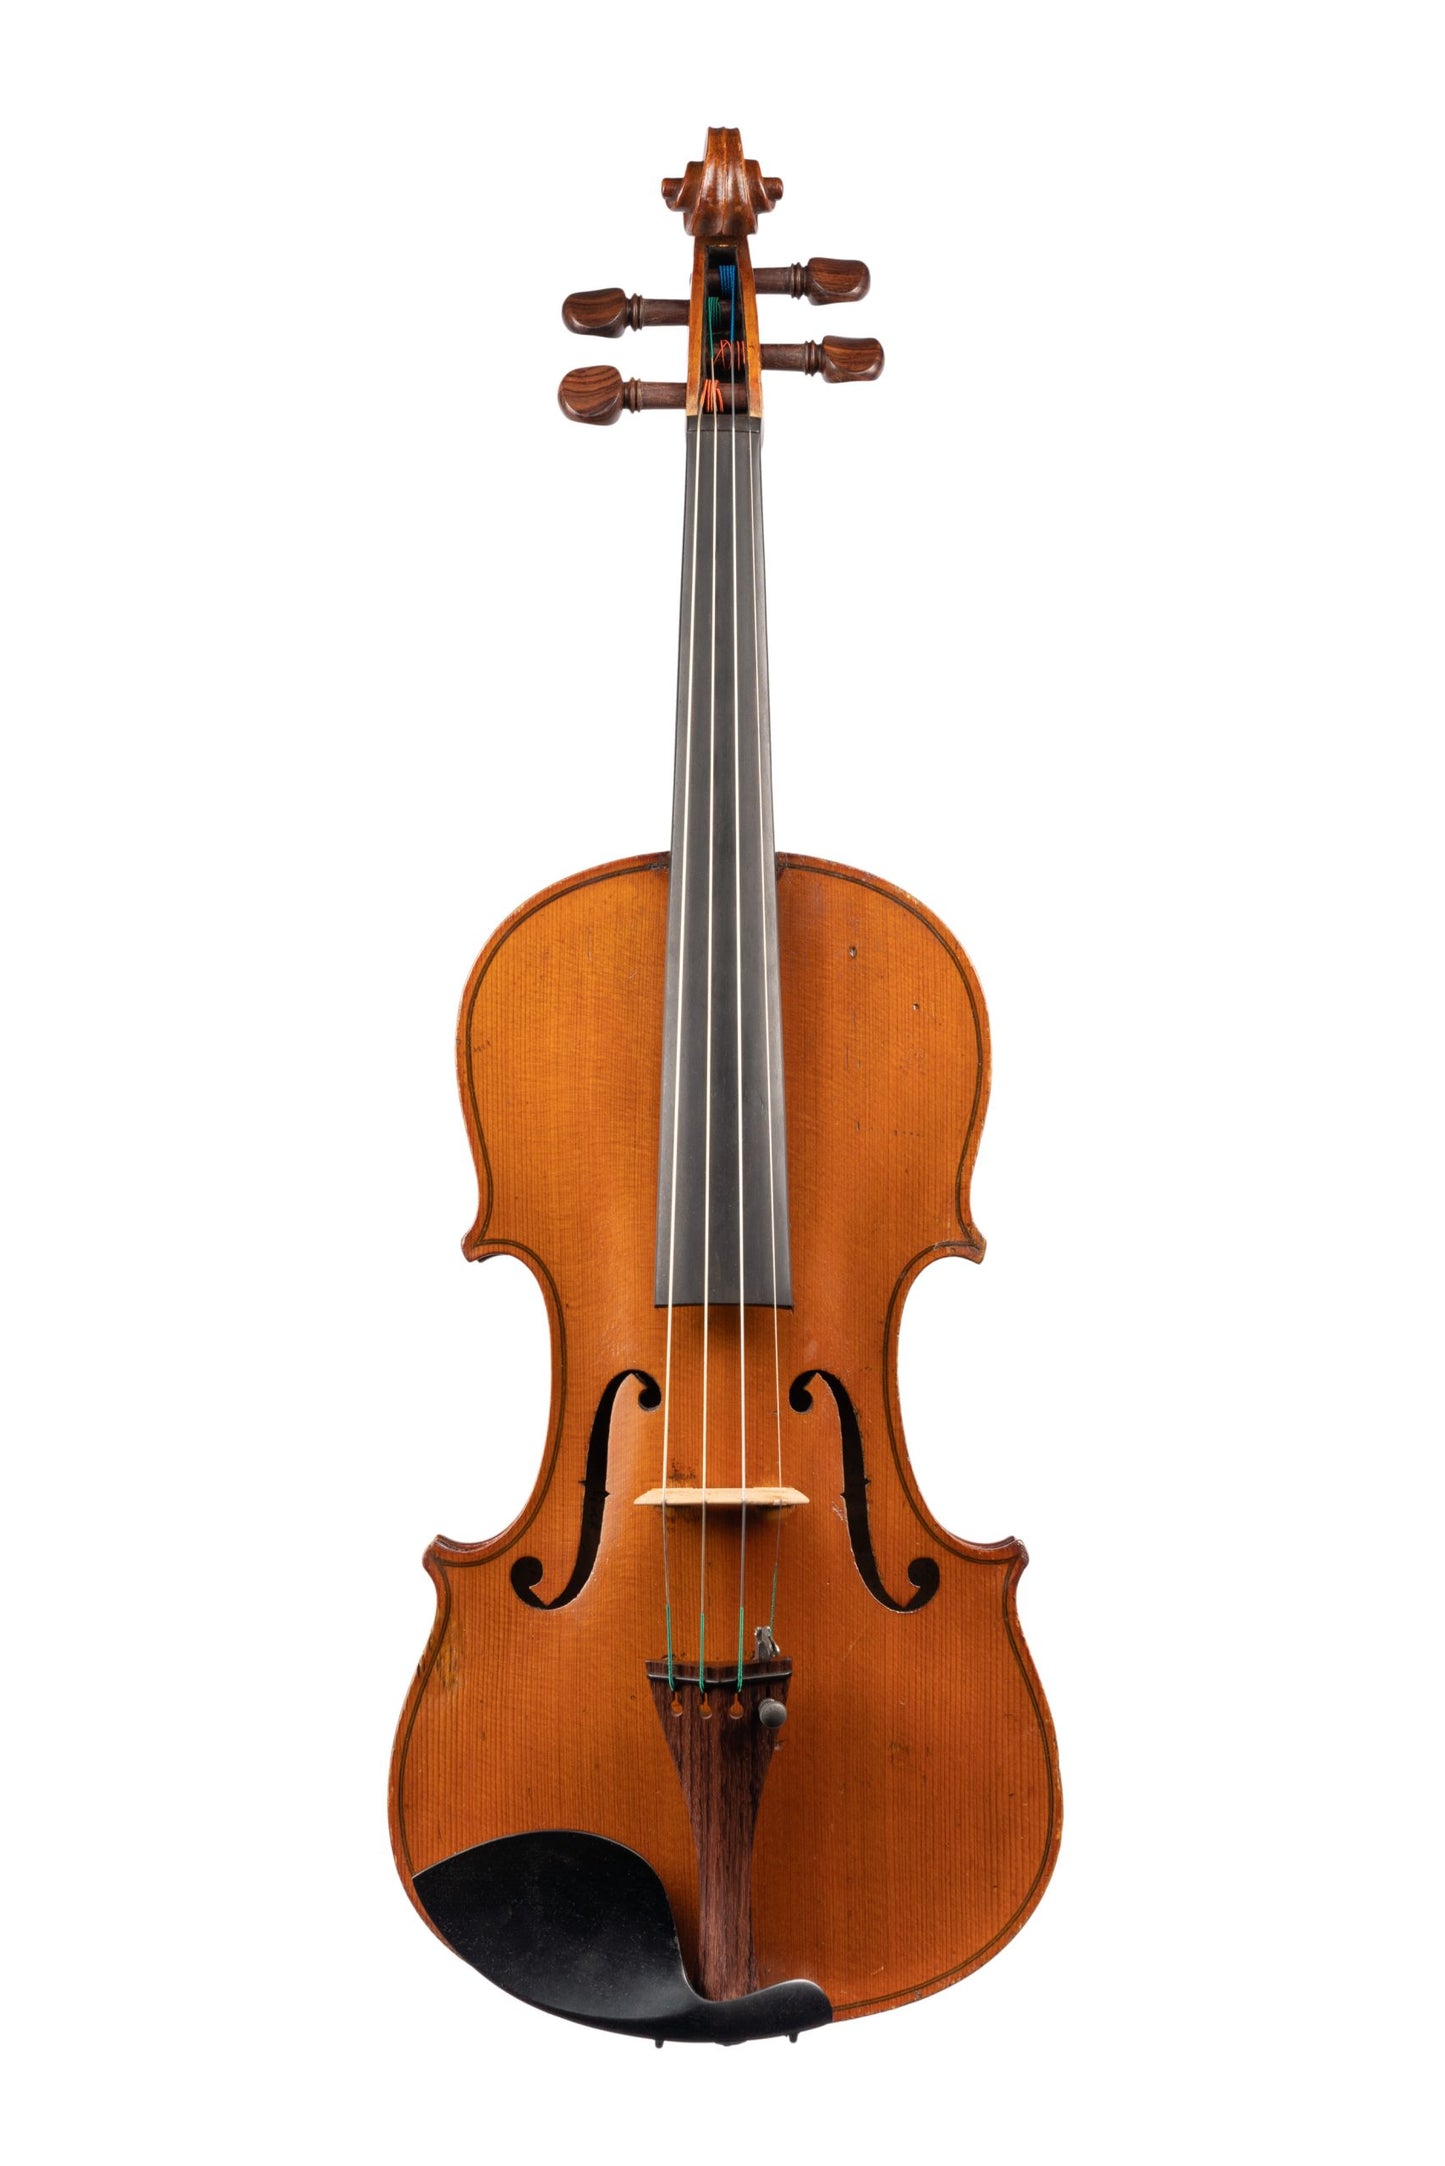 German Violin by German Workshop, GE-174